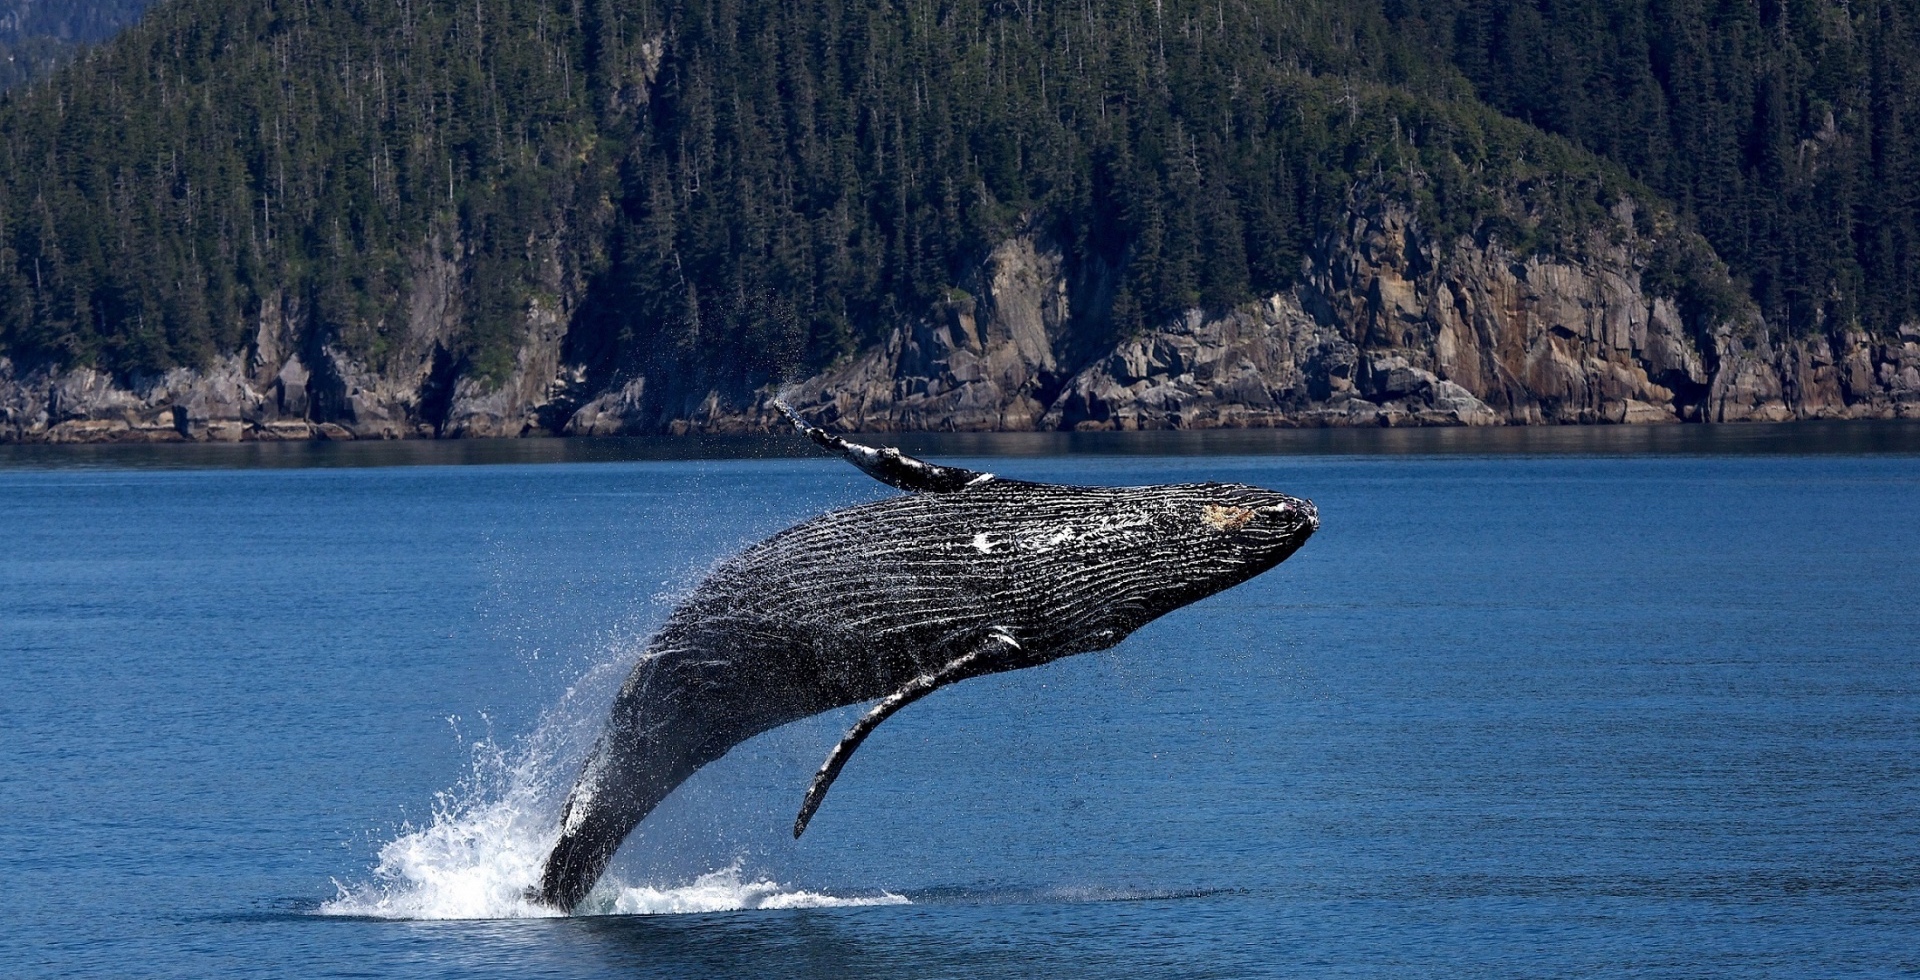 La baleine bleue est le plus grand animal marin à avoir jamais existé. Seuls certains dinosaures sauropodes, aux dimensions hypothétiques, peuvent lui disputer le titre de plus grand animal de la planète. © CC0 Public Domain